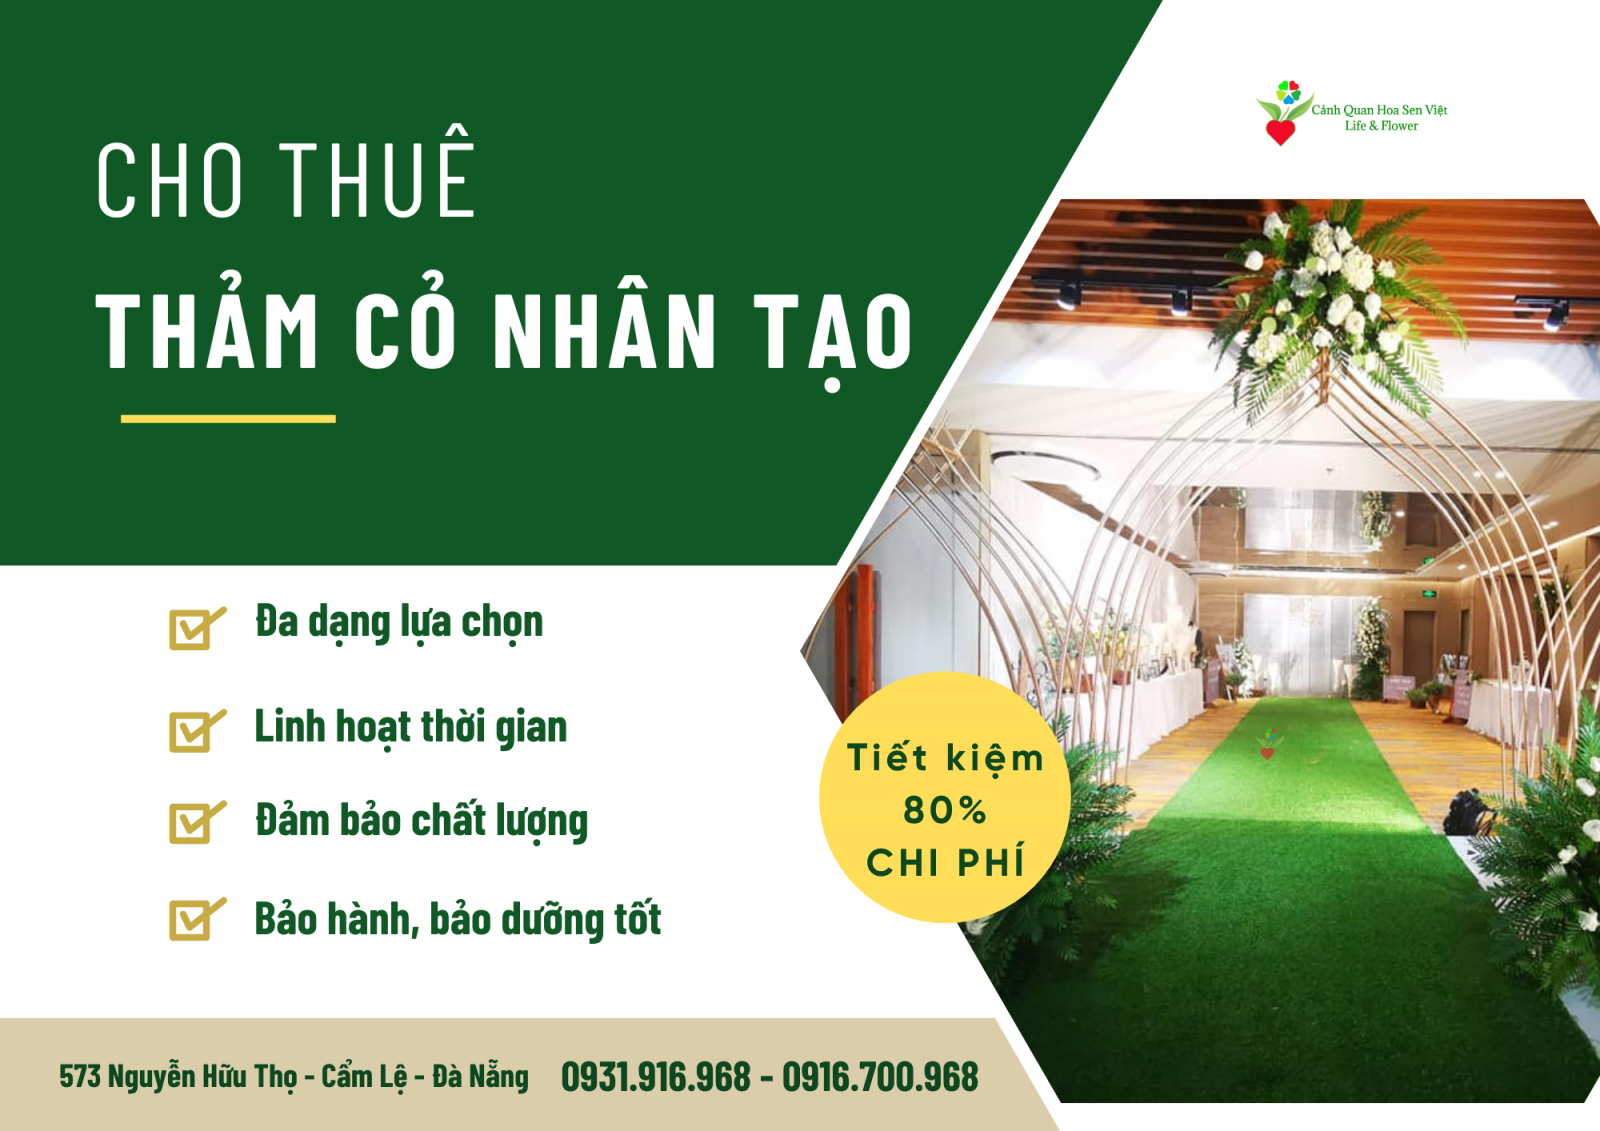 Cho thuê thảm cỏ nhân tạo - Cửa hàng cỏ nhân tạo Đà Nẵng Hoa Sen Việt